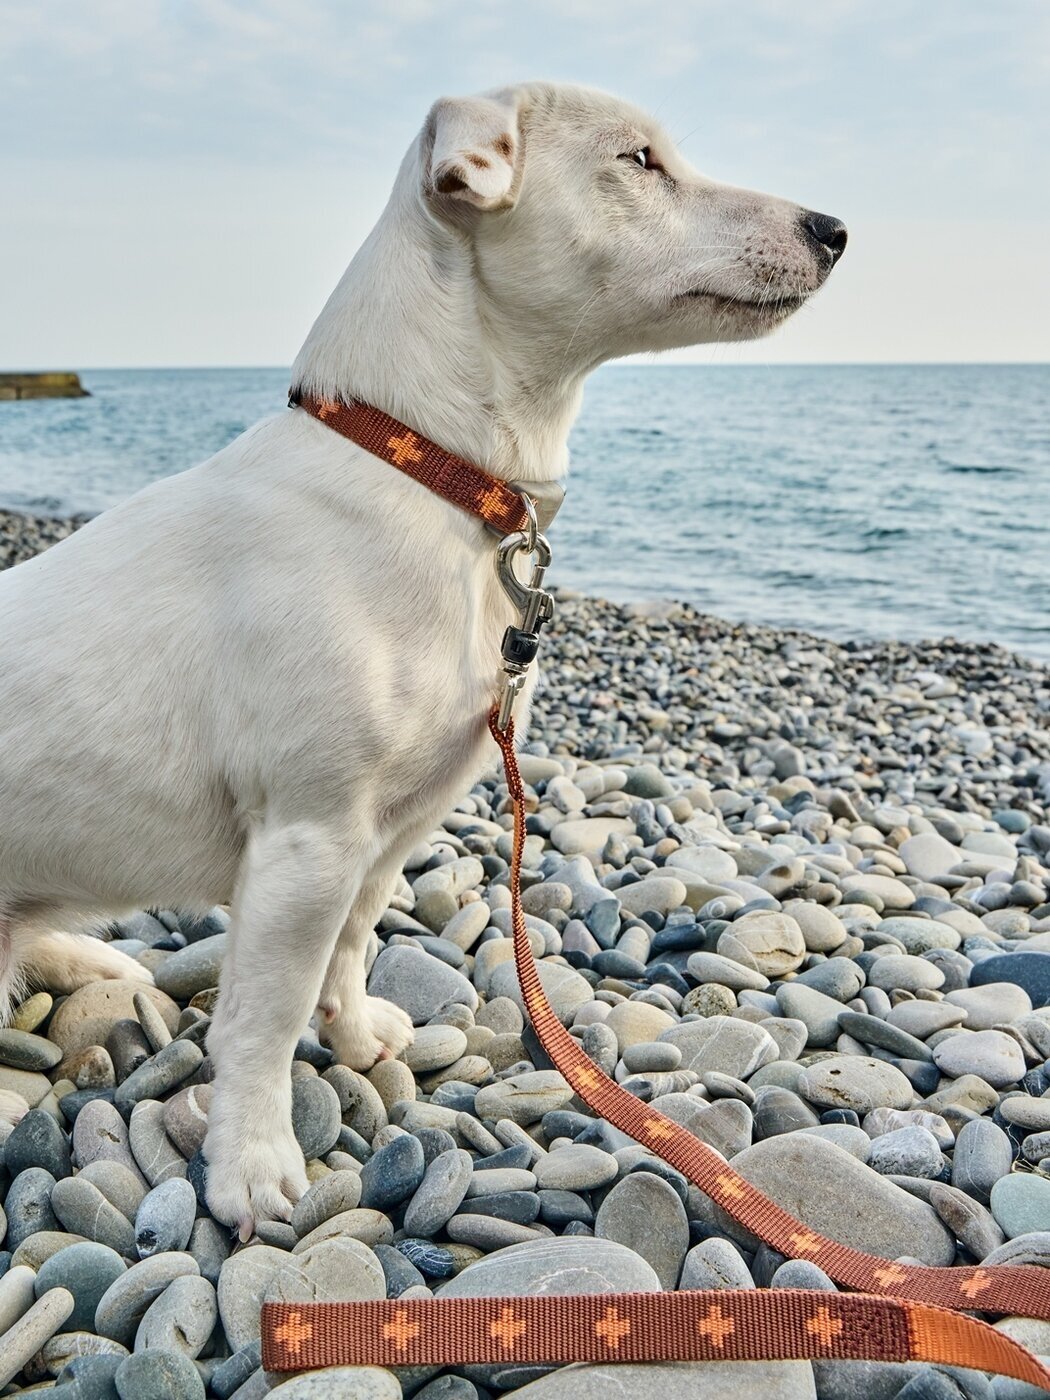 Ошейник для собак Japan Premium Pet из прочного нейлона с силиконовой защитой, цвет коричневый, размер L.